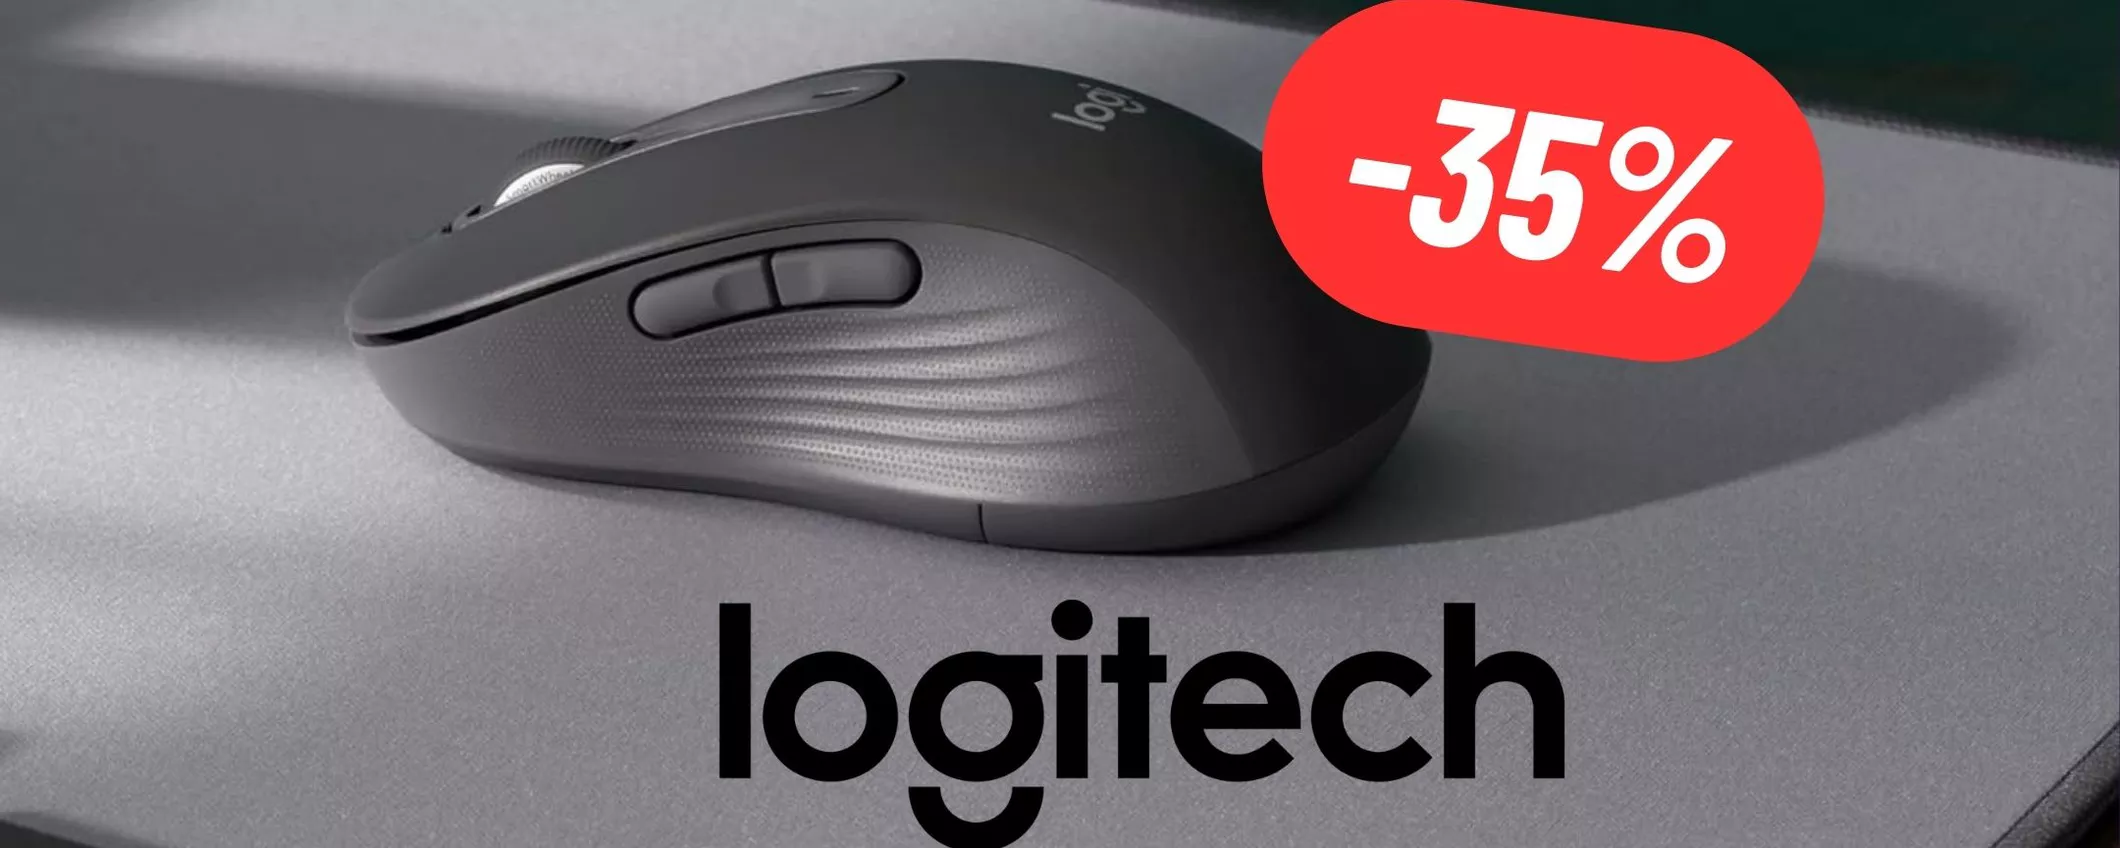 Mouse Logitech wireless elegantissimo, perfetto per uso ufficio al 35% di sconto